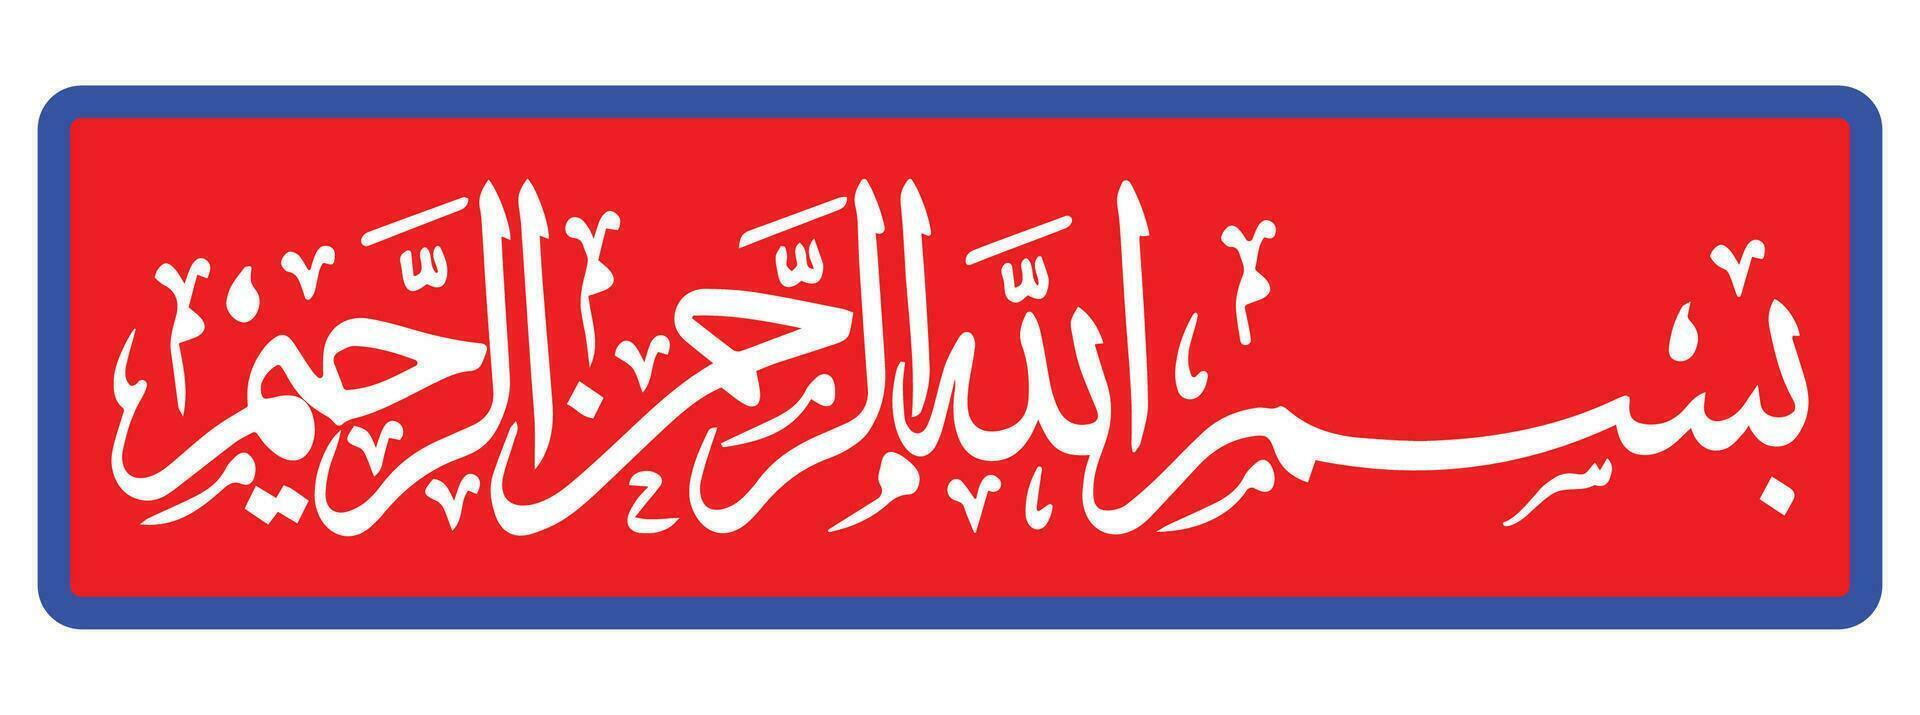 bismillah kleurrijk vector schoonschrift bismillah Islamitisch schoonschrift